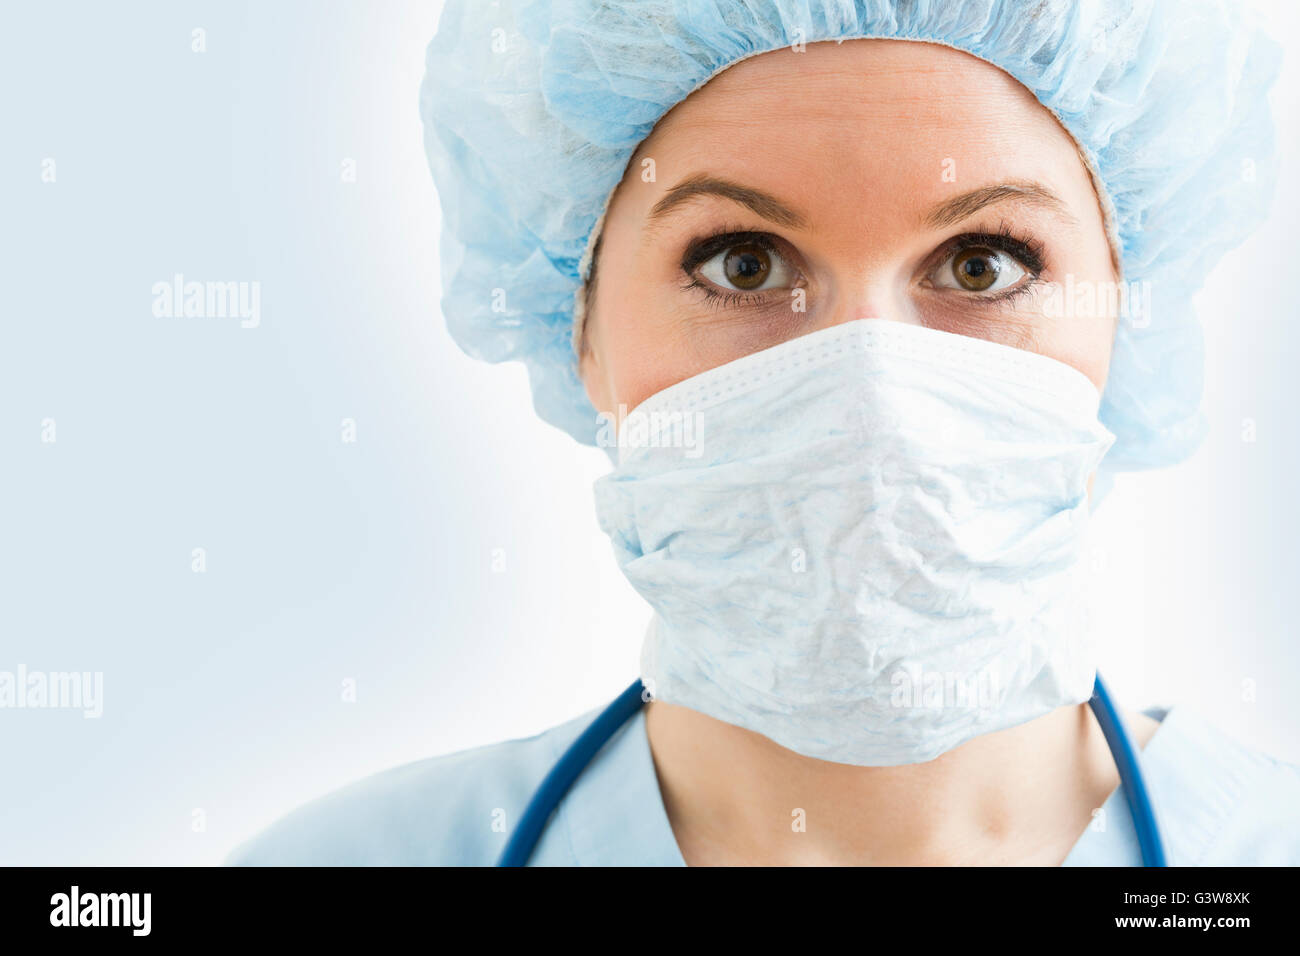 Retrato de enfermera quirúrgica y máscara con tapa Foto de stock